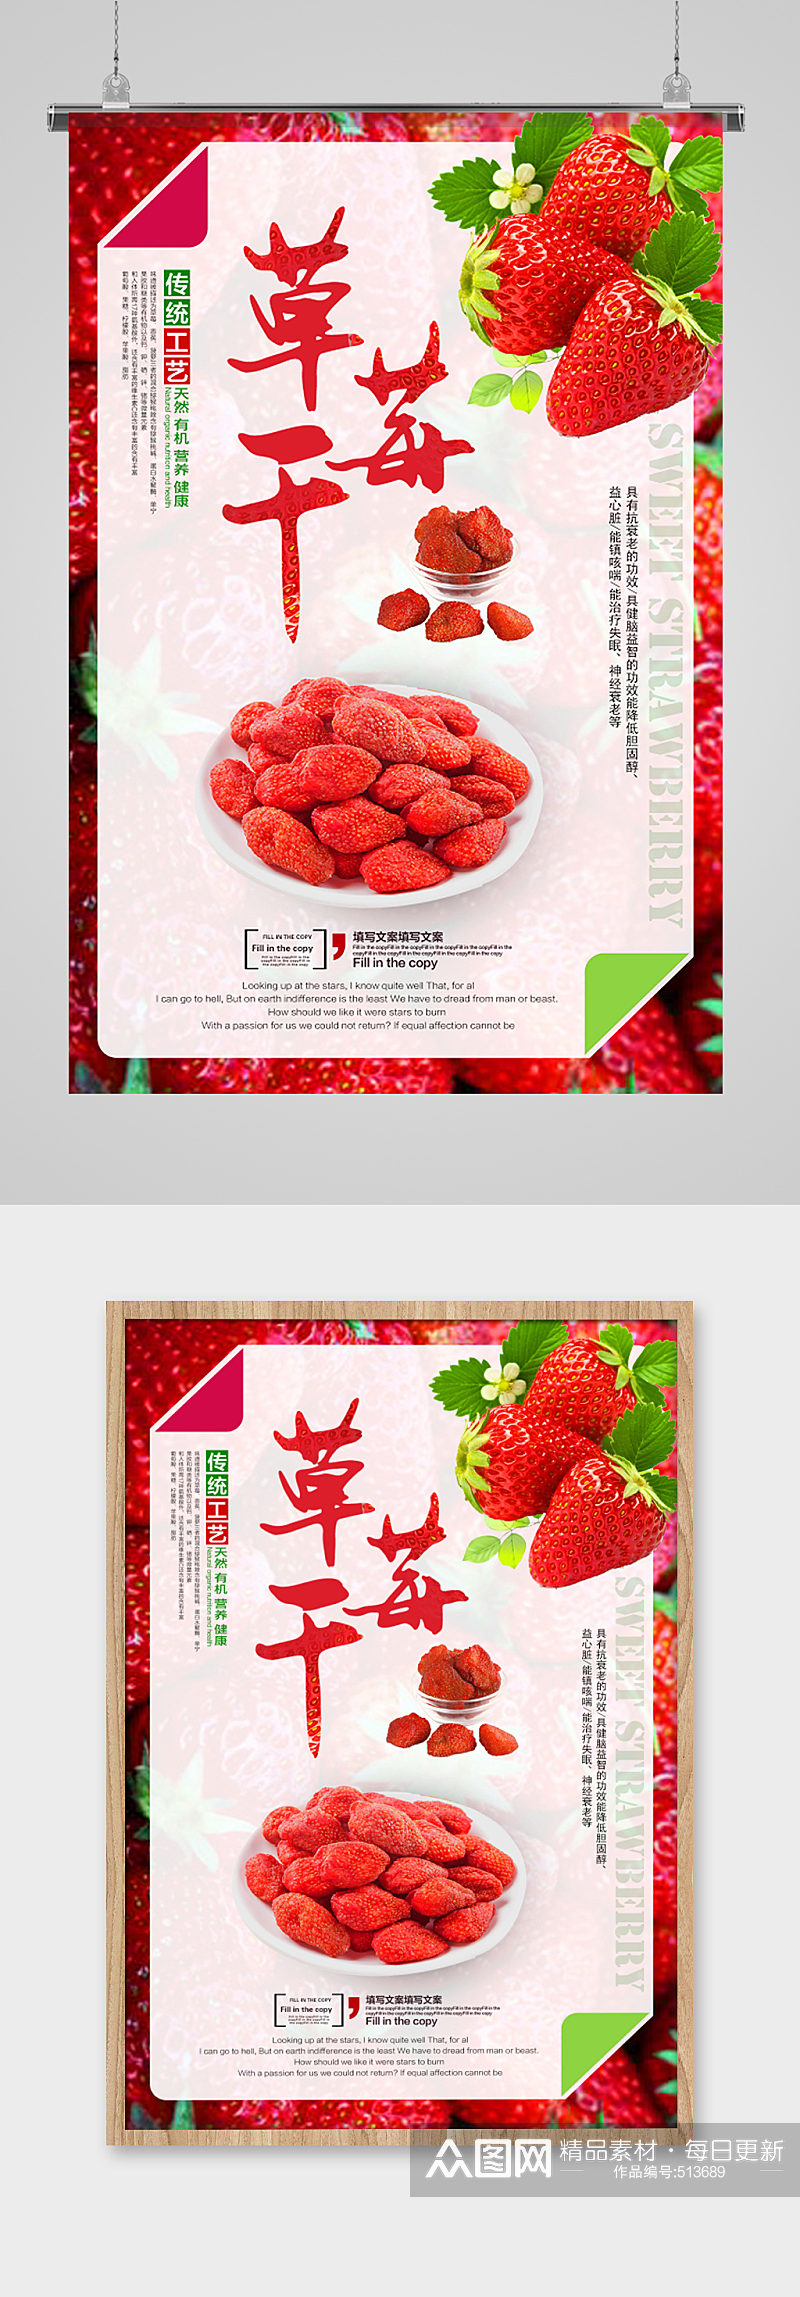 草莓干食品零食海报食品类海报宣传单页素材